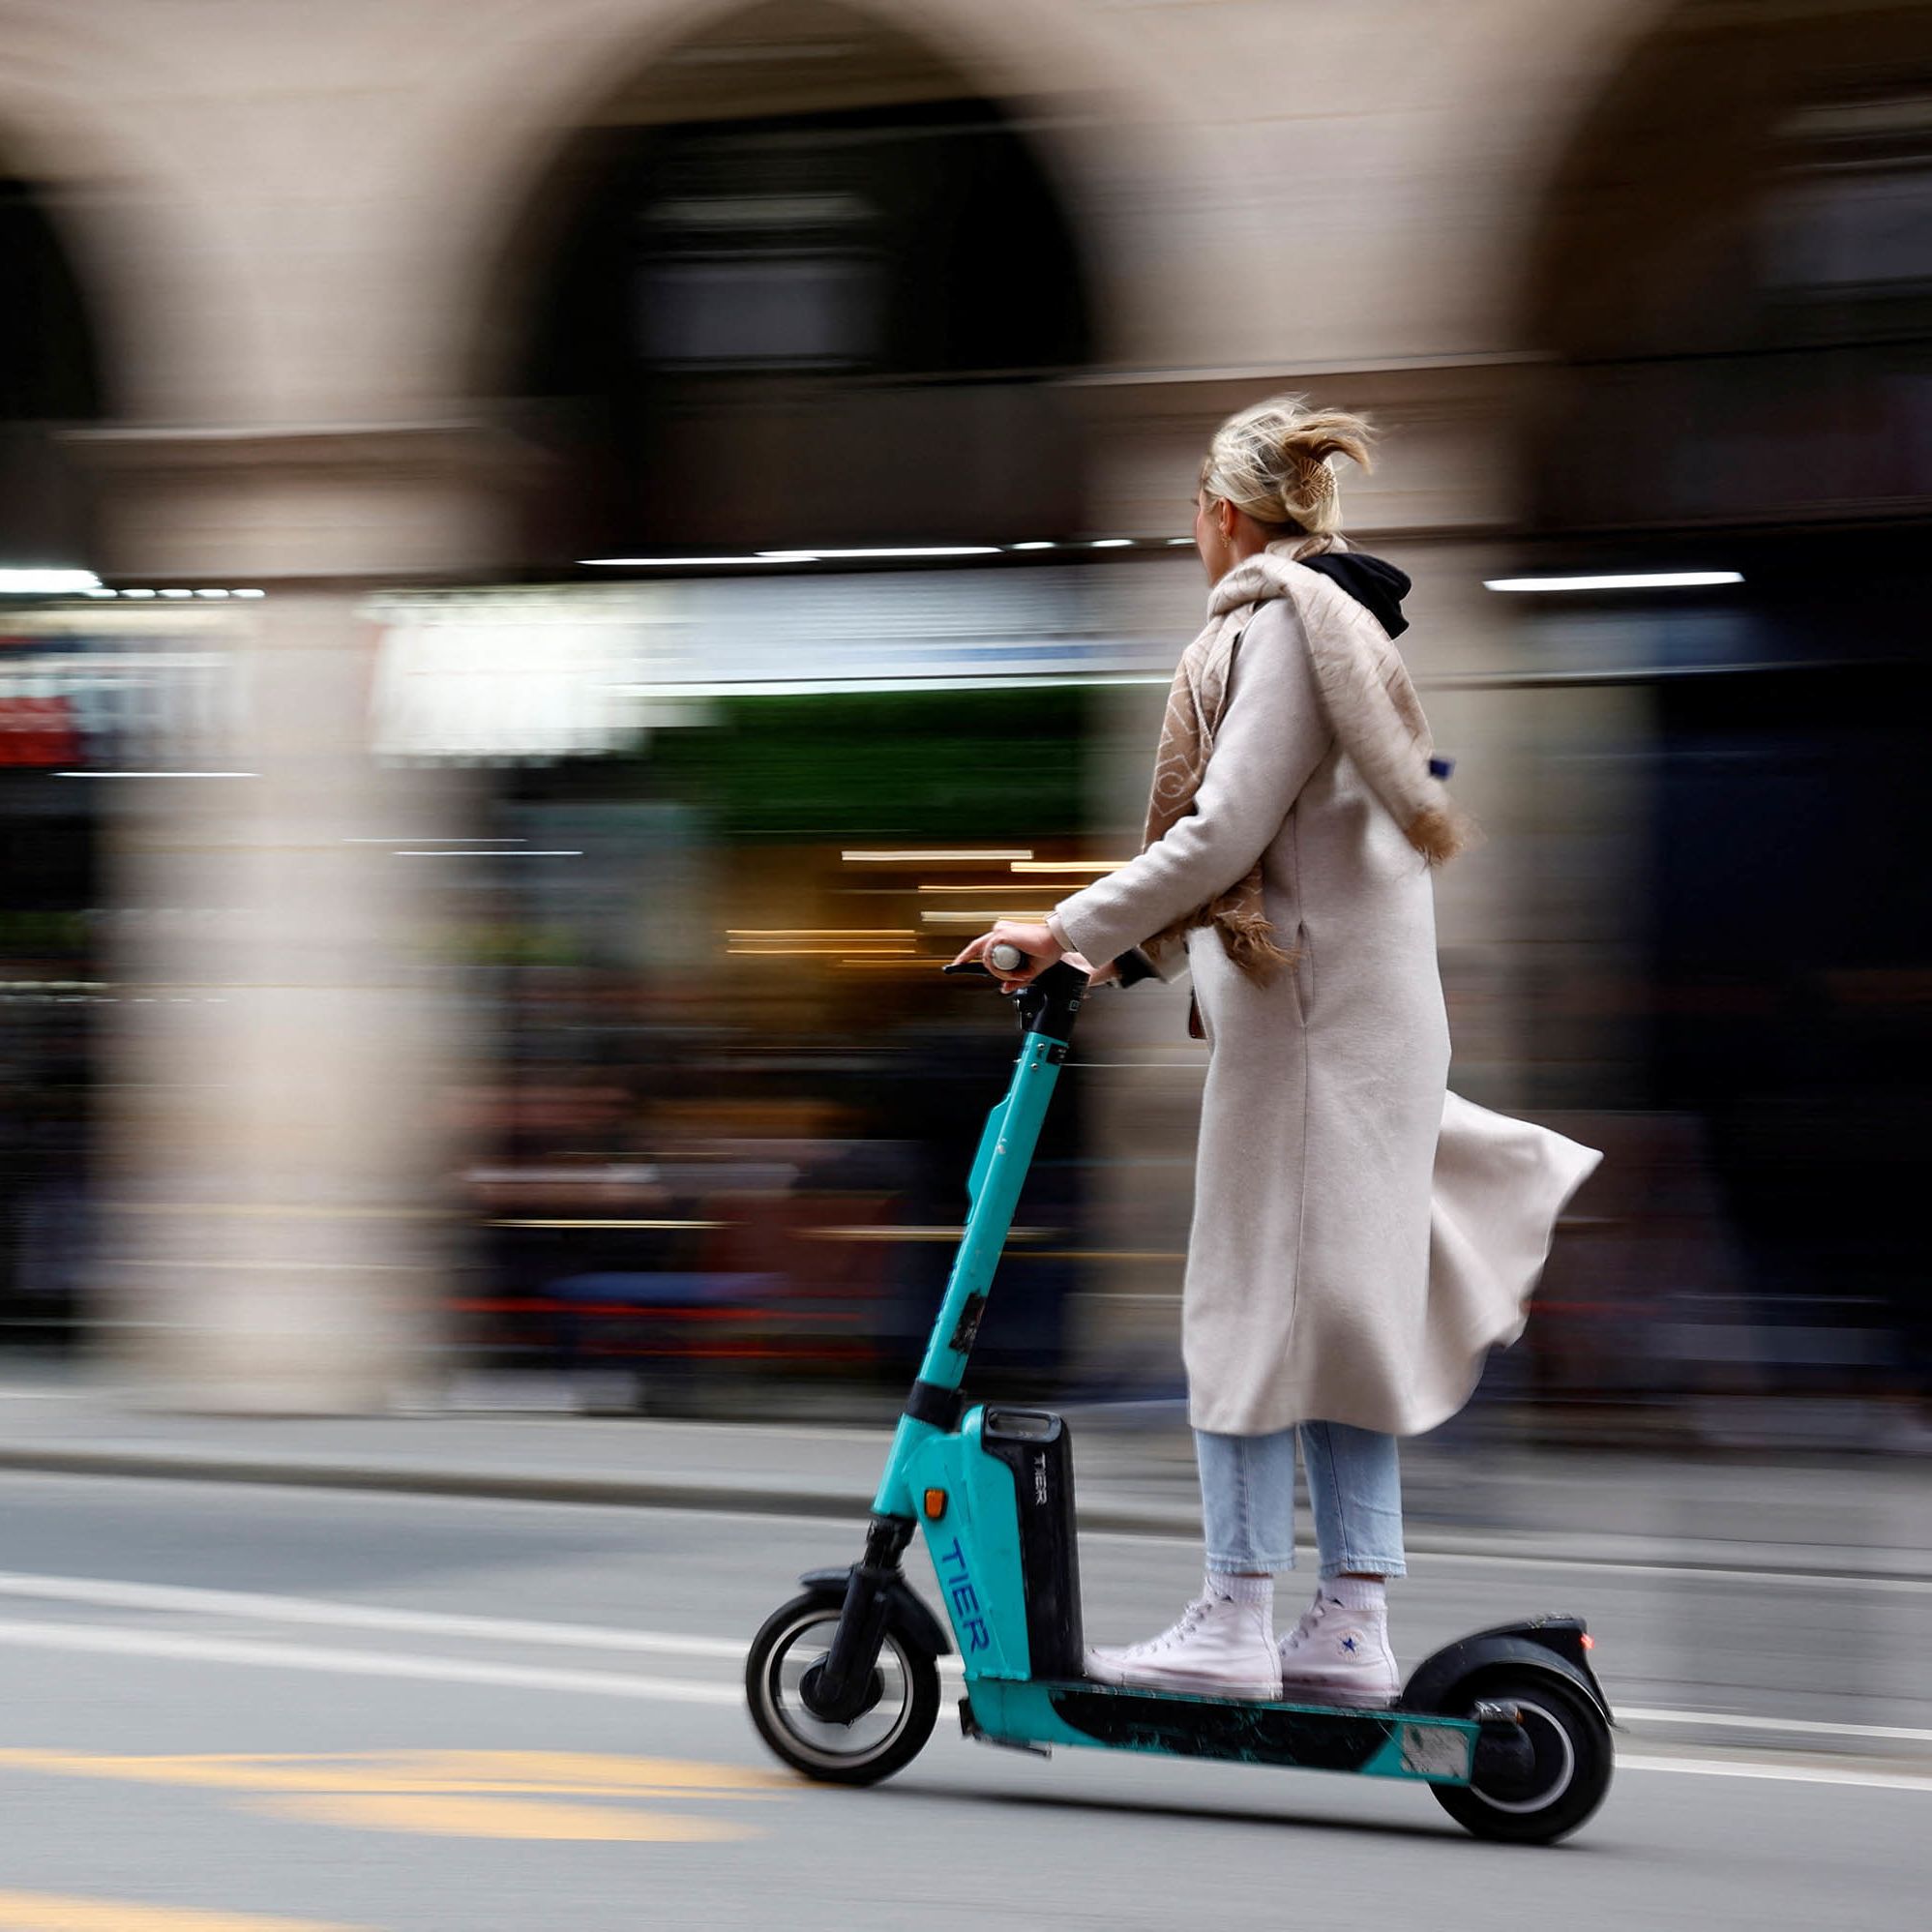 sammenbrud Uafhængighed bjælke Opinion: Paris got it right on scooters | CNN